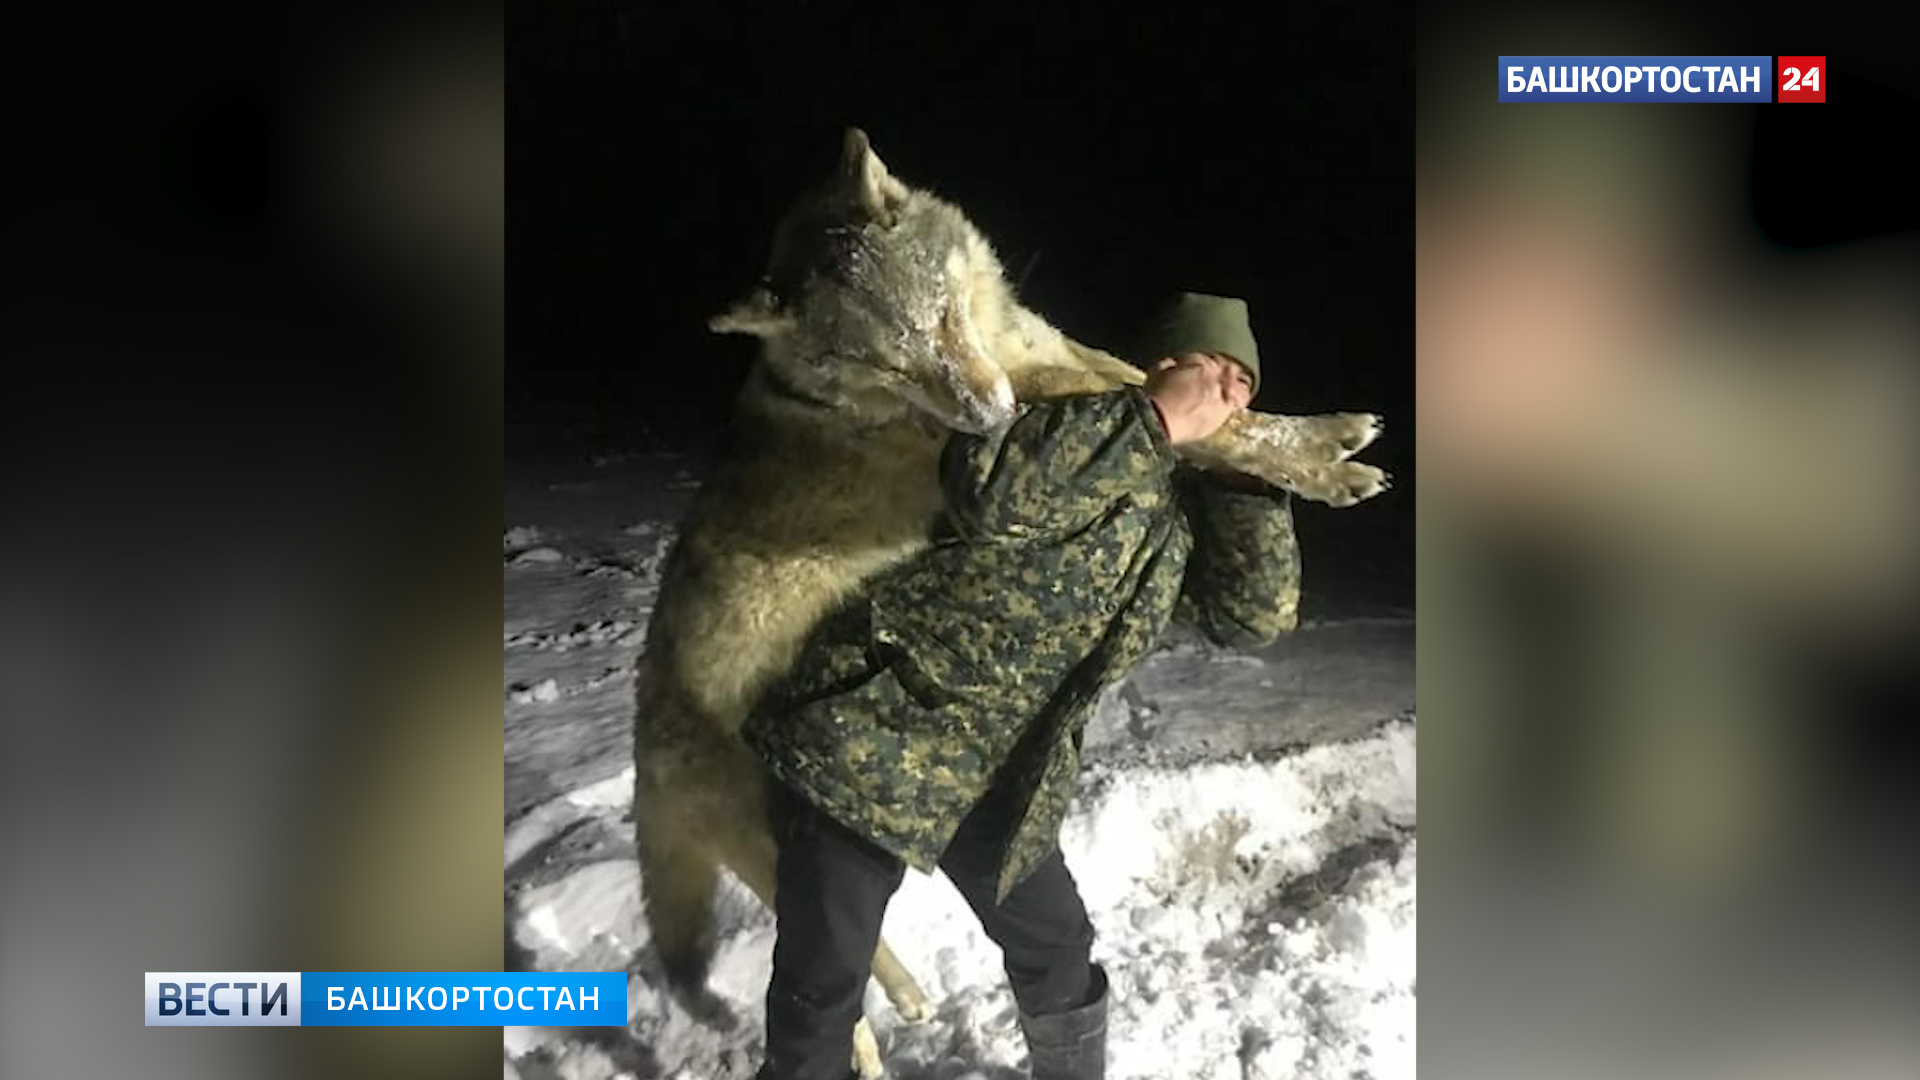 Огромный волк застрелен в Башкирии (фото) - фото 1